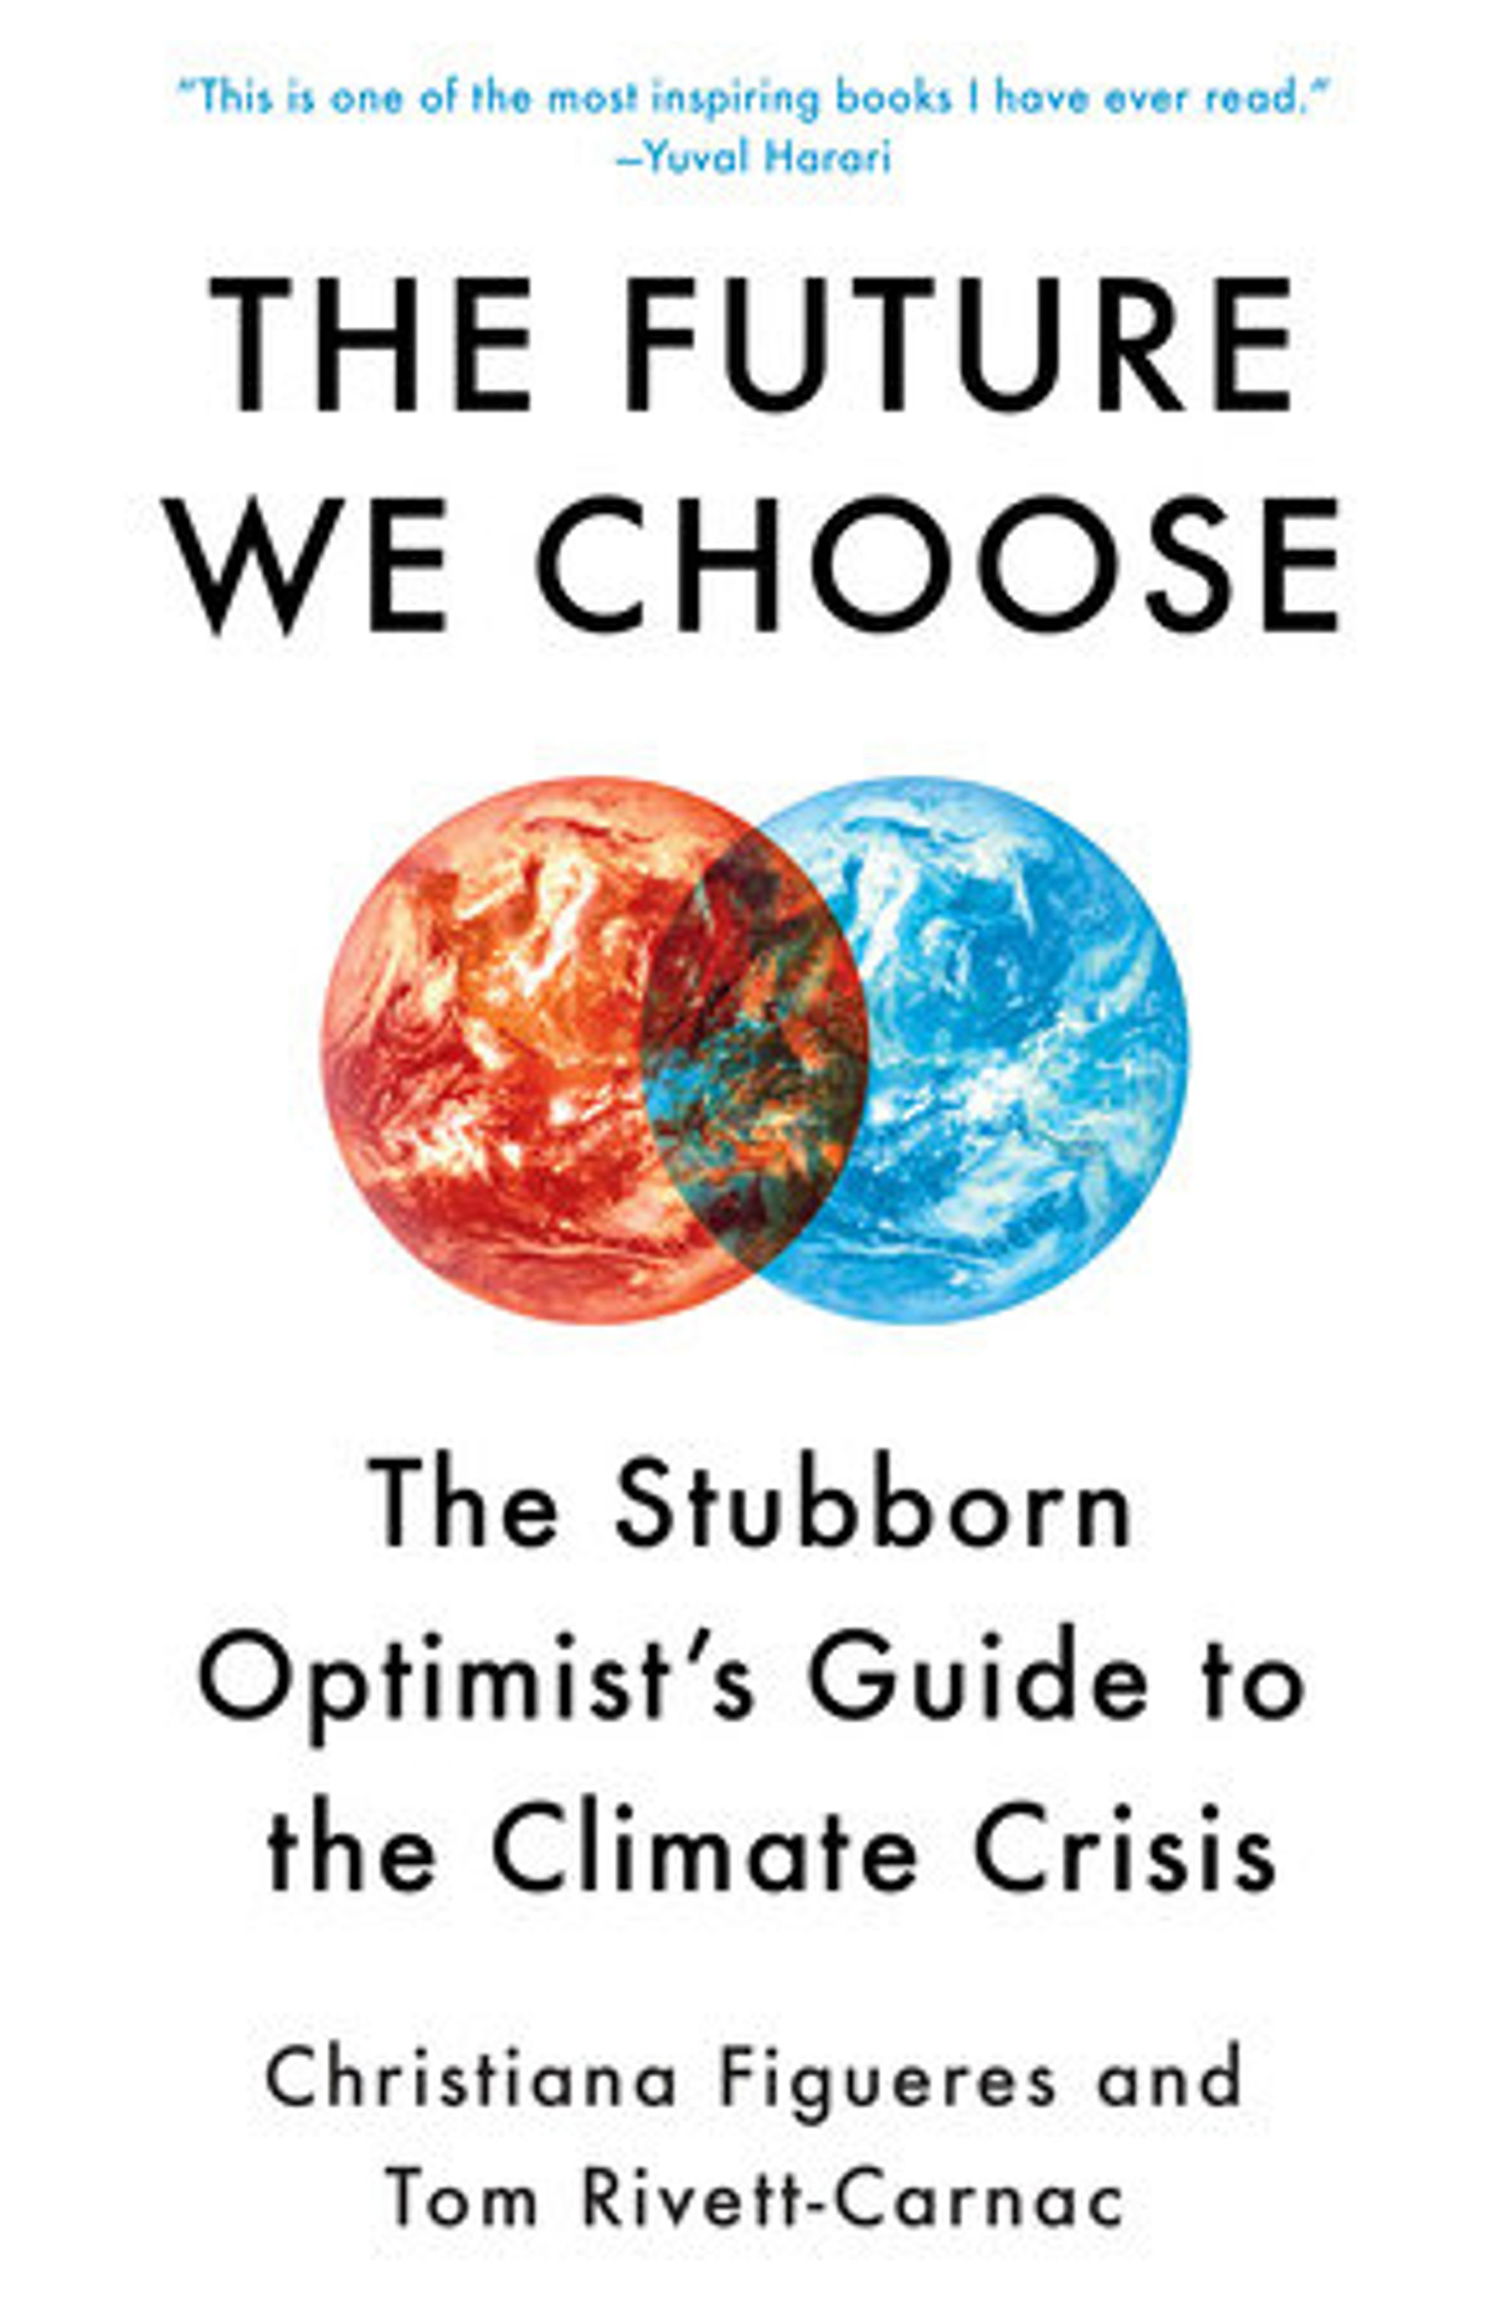 The Future We Choose by Christiana Figueres, Tom Rivett-Carnac: 9780593080931 | PenguinRandomHouse.com: Books